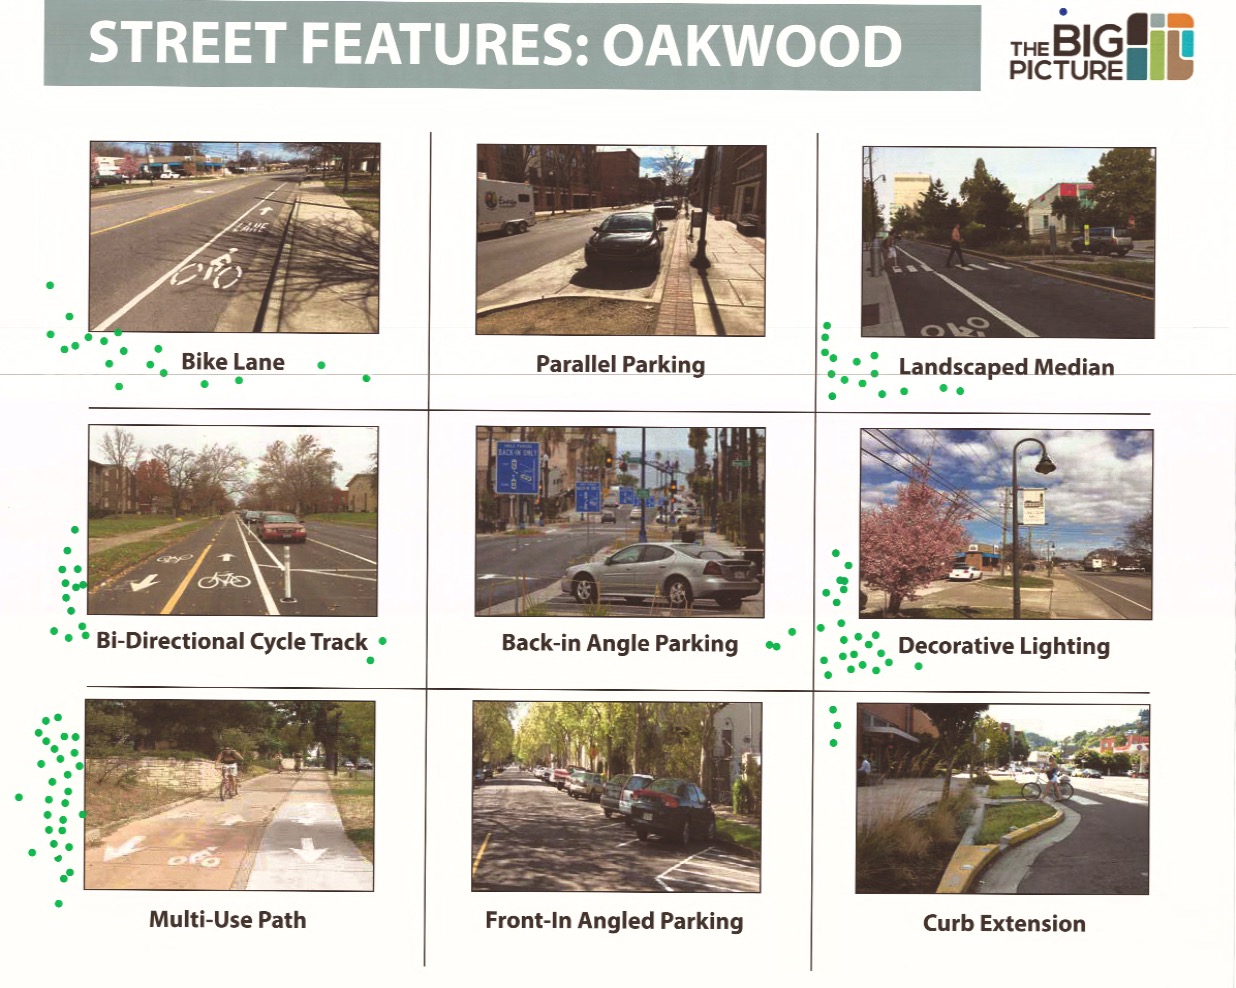 Street Features: Oakwood